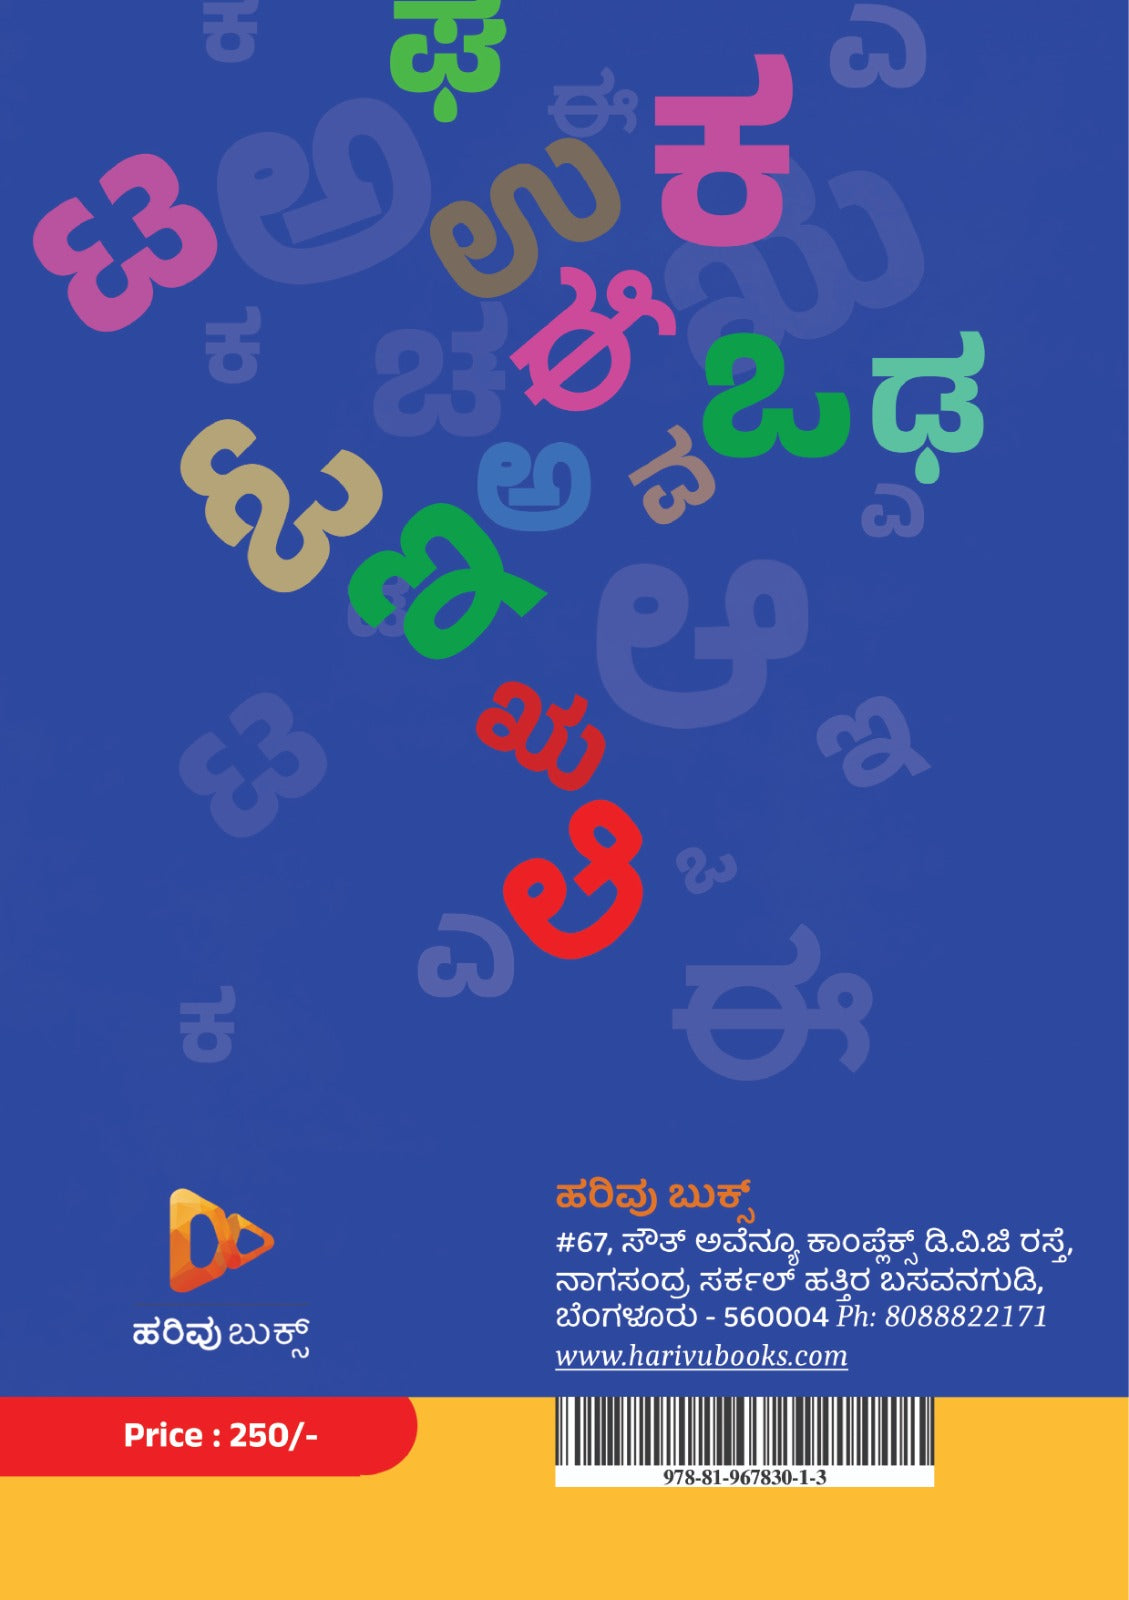 Easy Kannada - ಈಜಿ ಕನ್ನಡ